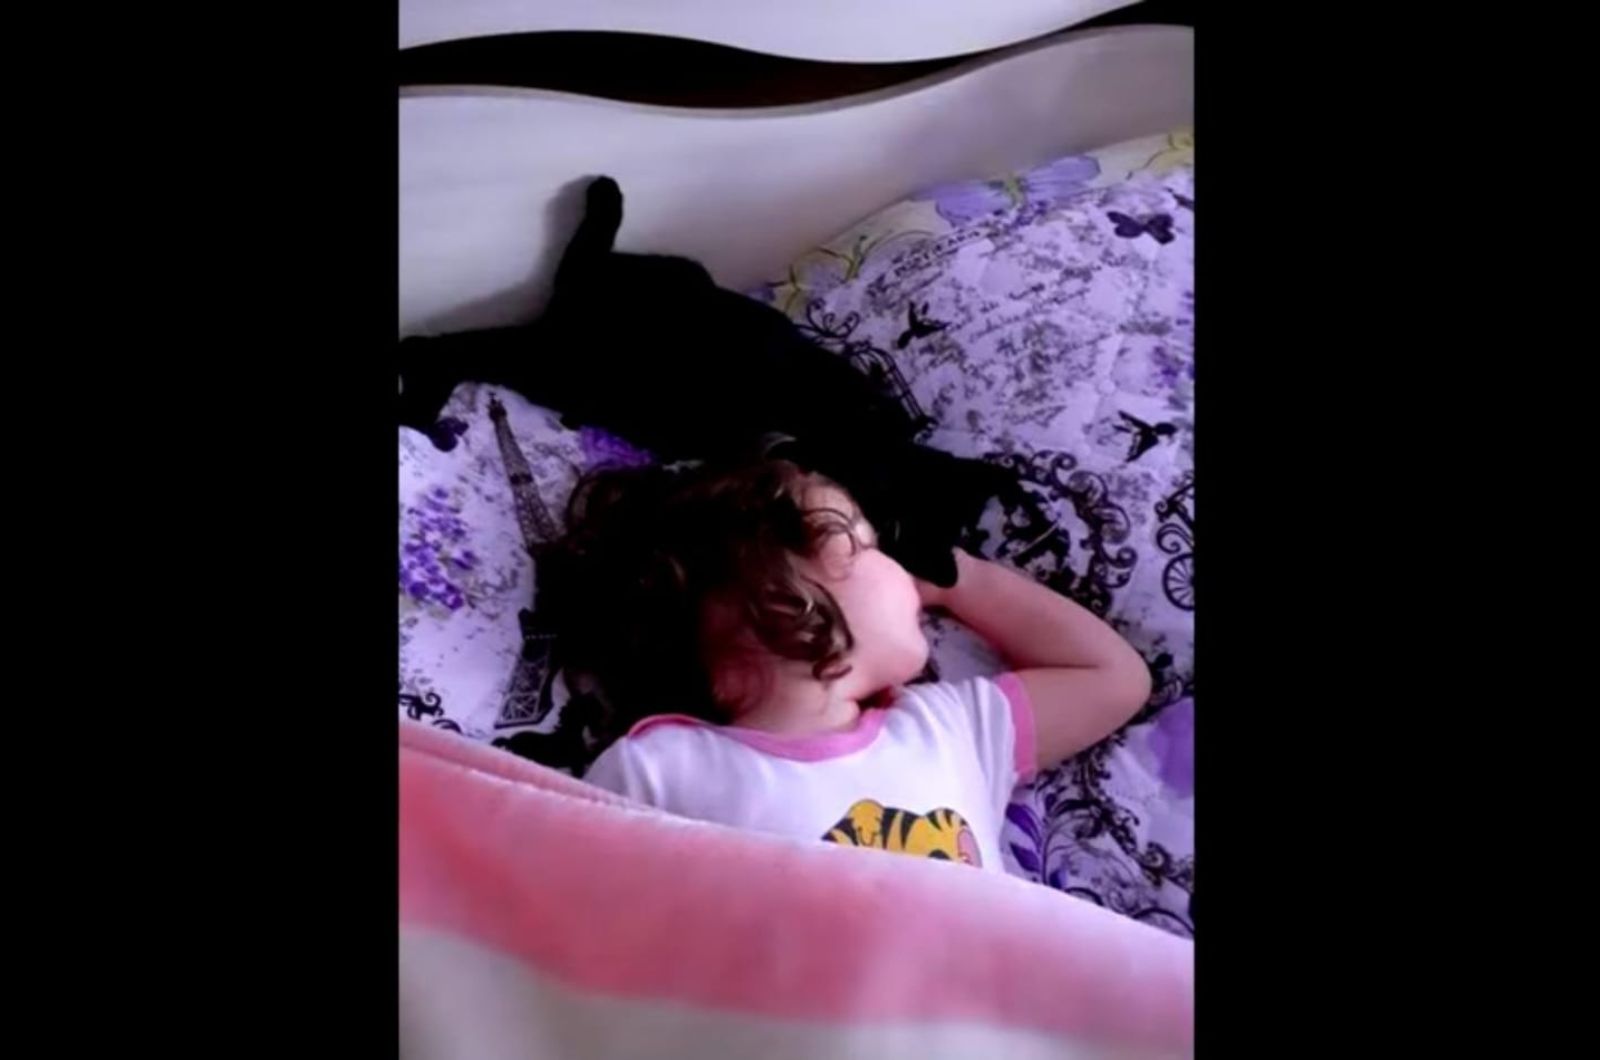 little girl and kitten lying in bed